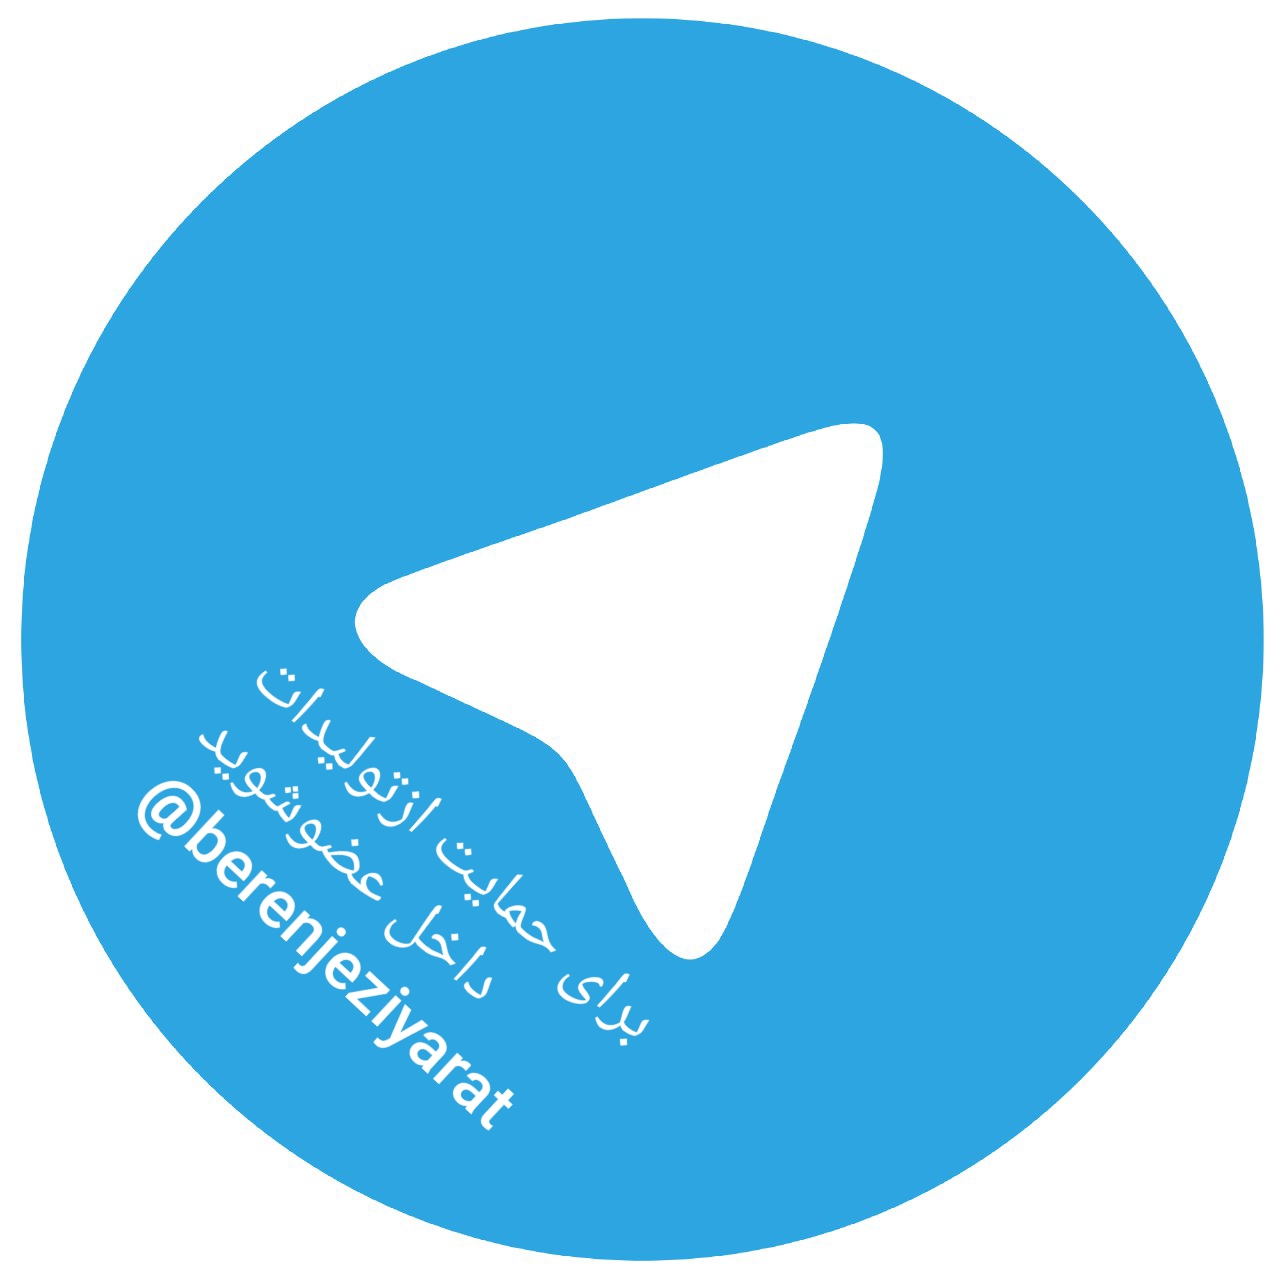 لطفا برای حمایت از کالای ایرانی در کانال ما عضو شوید